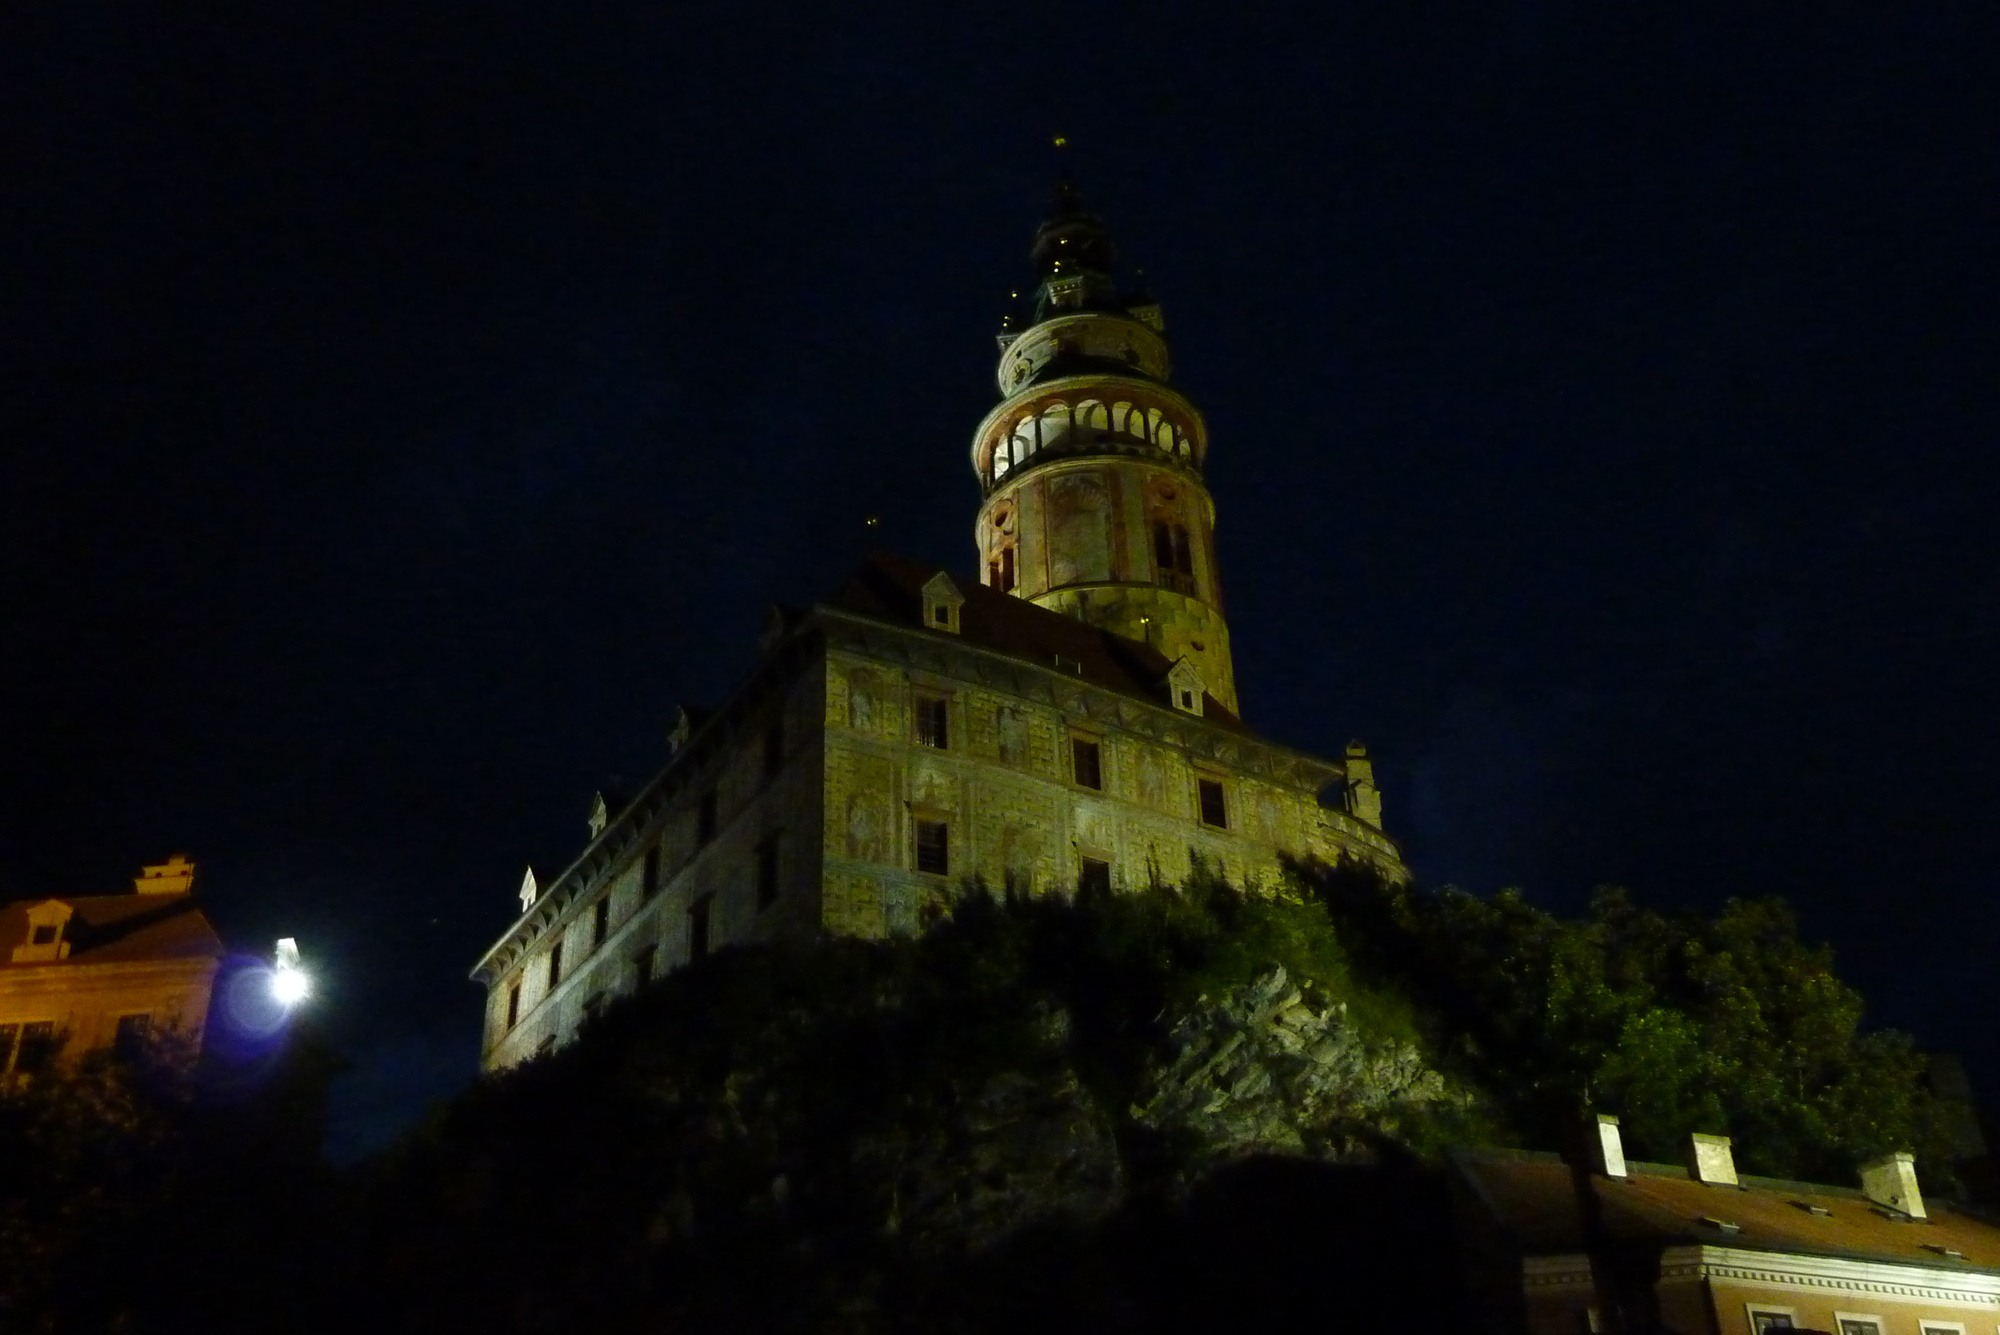 c-krumlov-castle-tower-at-night.jpg